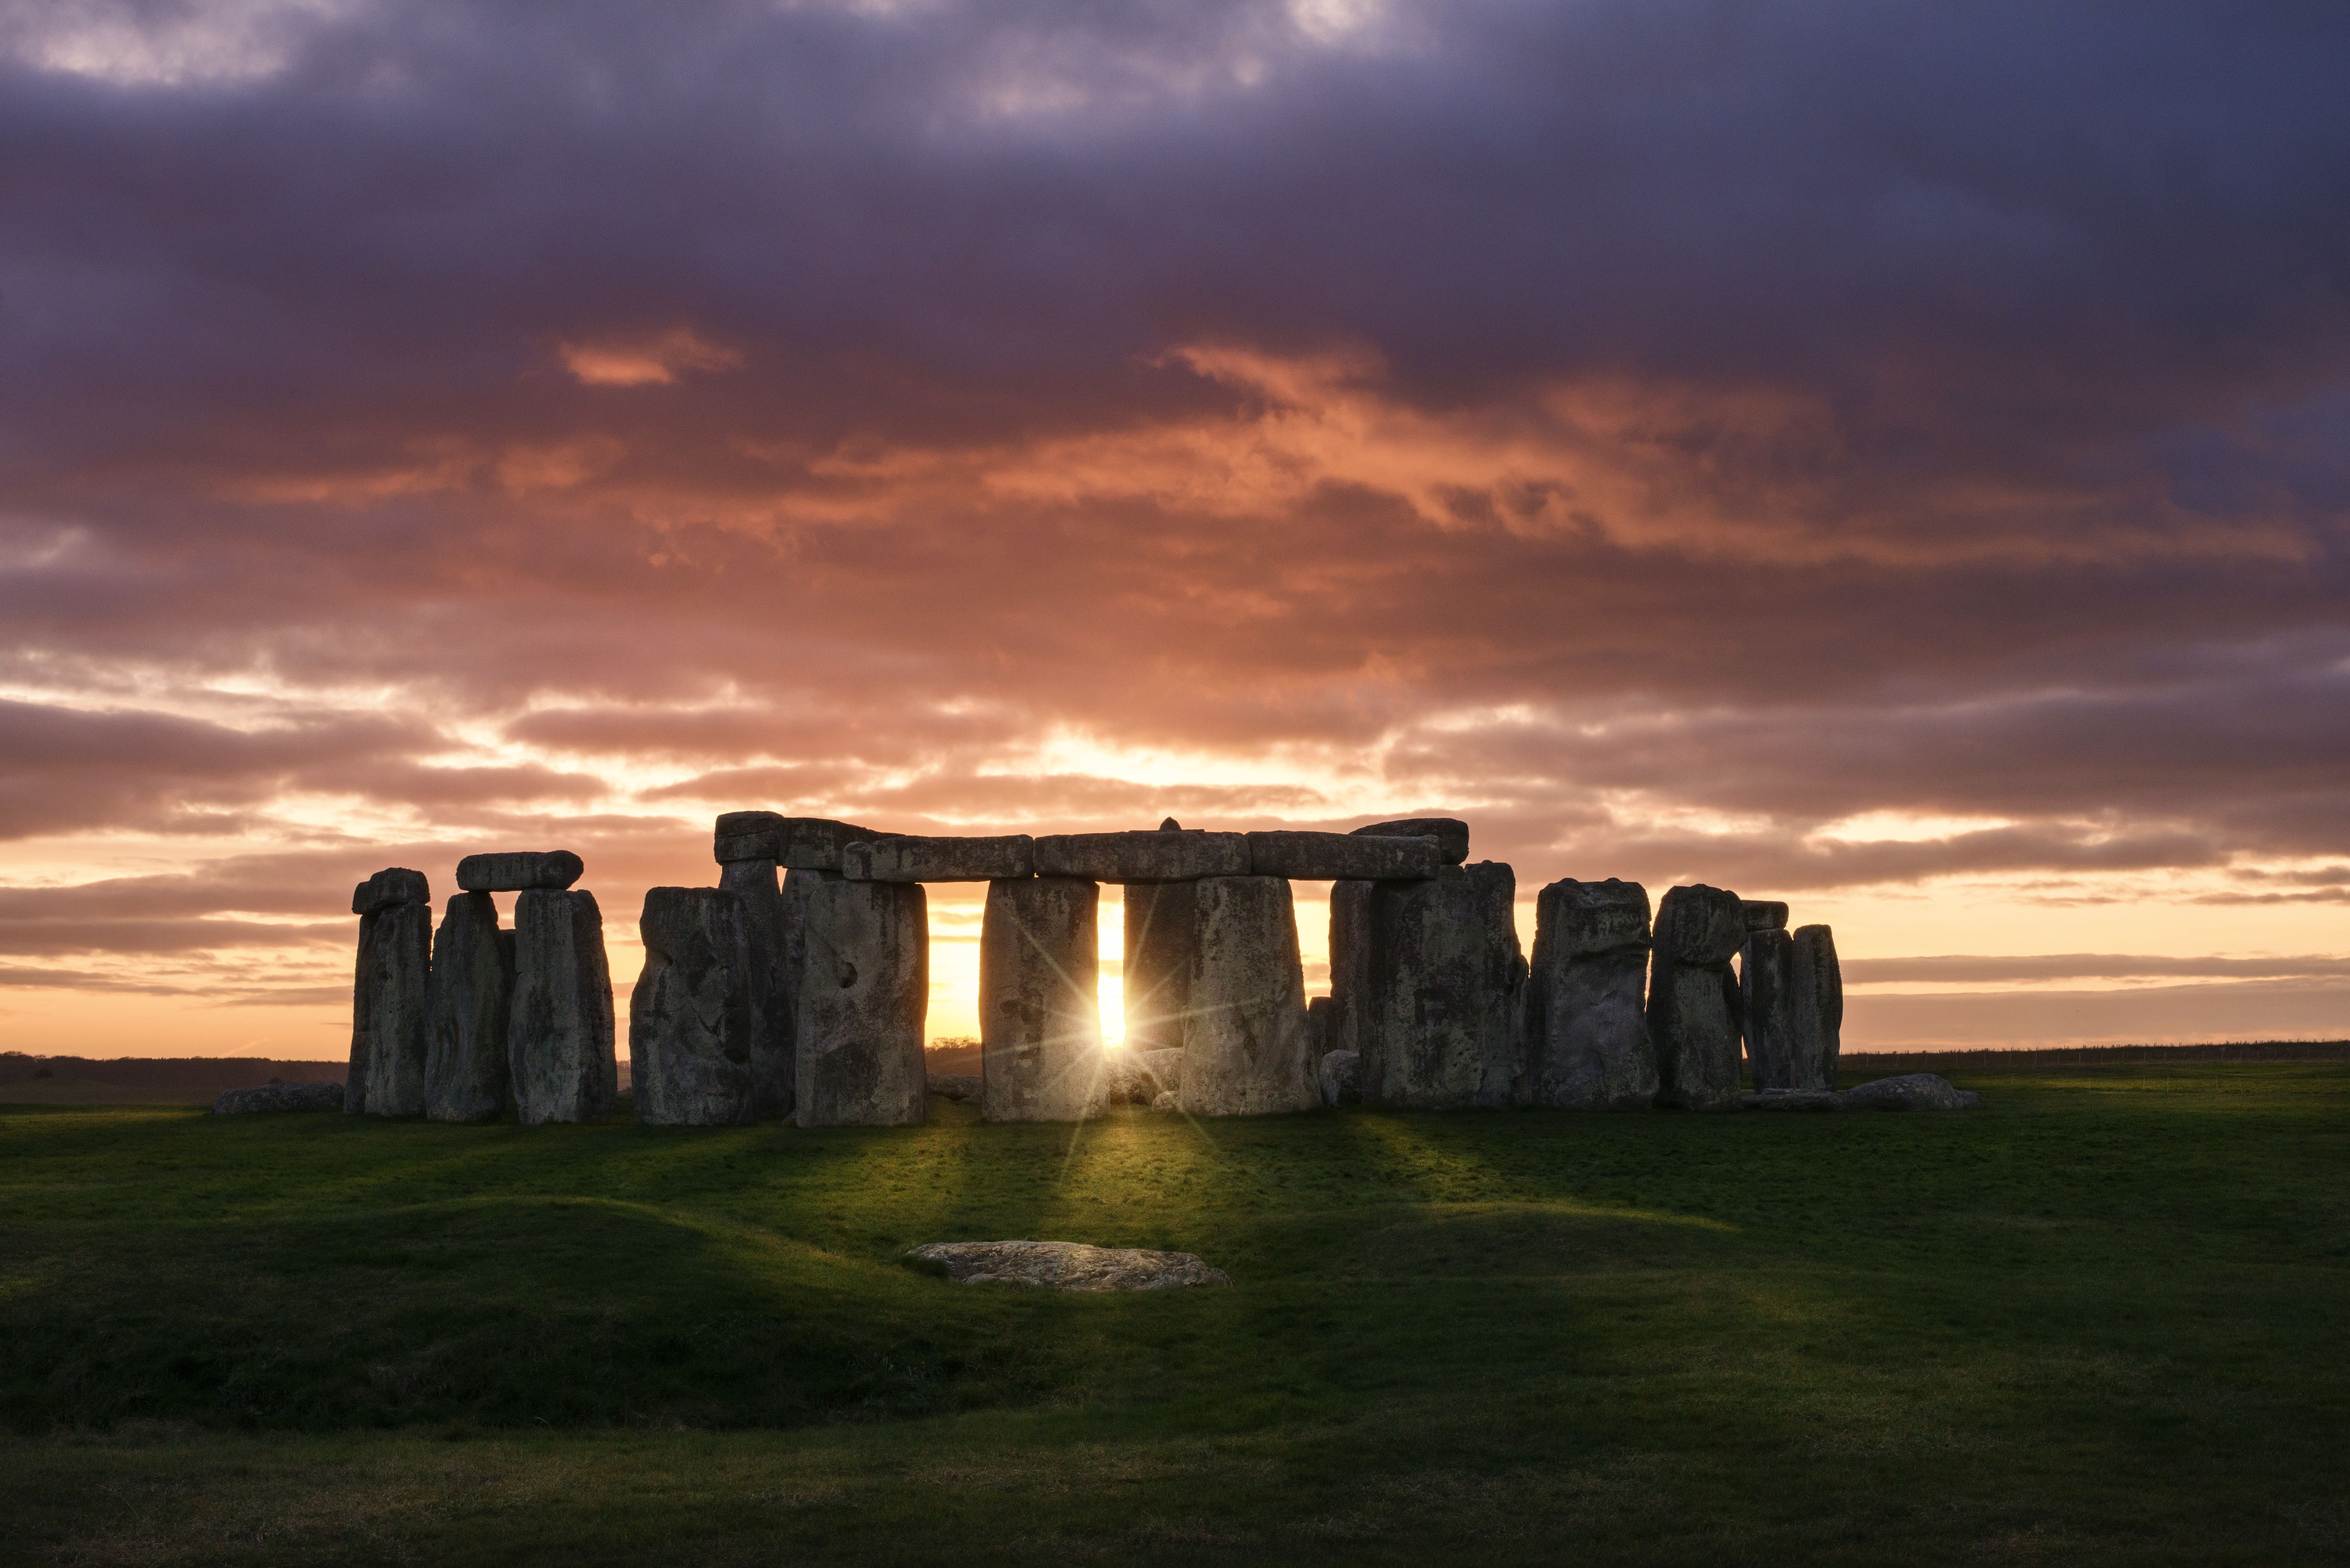 Resuelven uno de los misterios de Stonehenge: había una intención